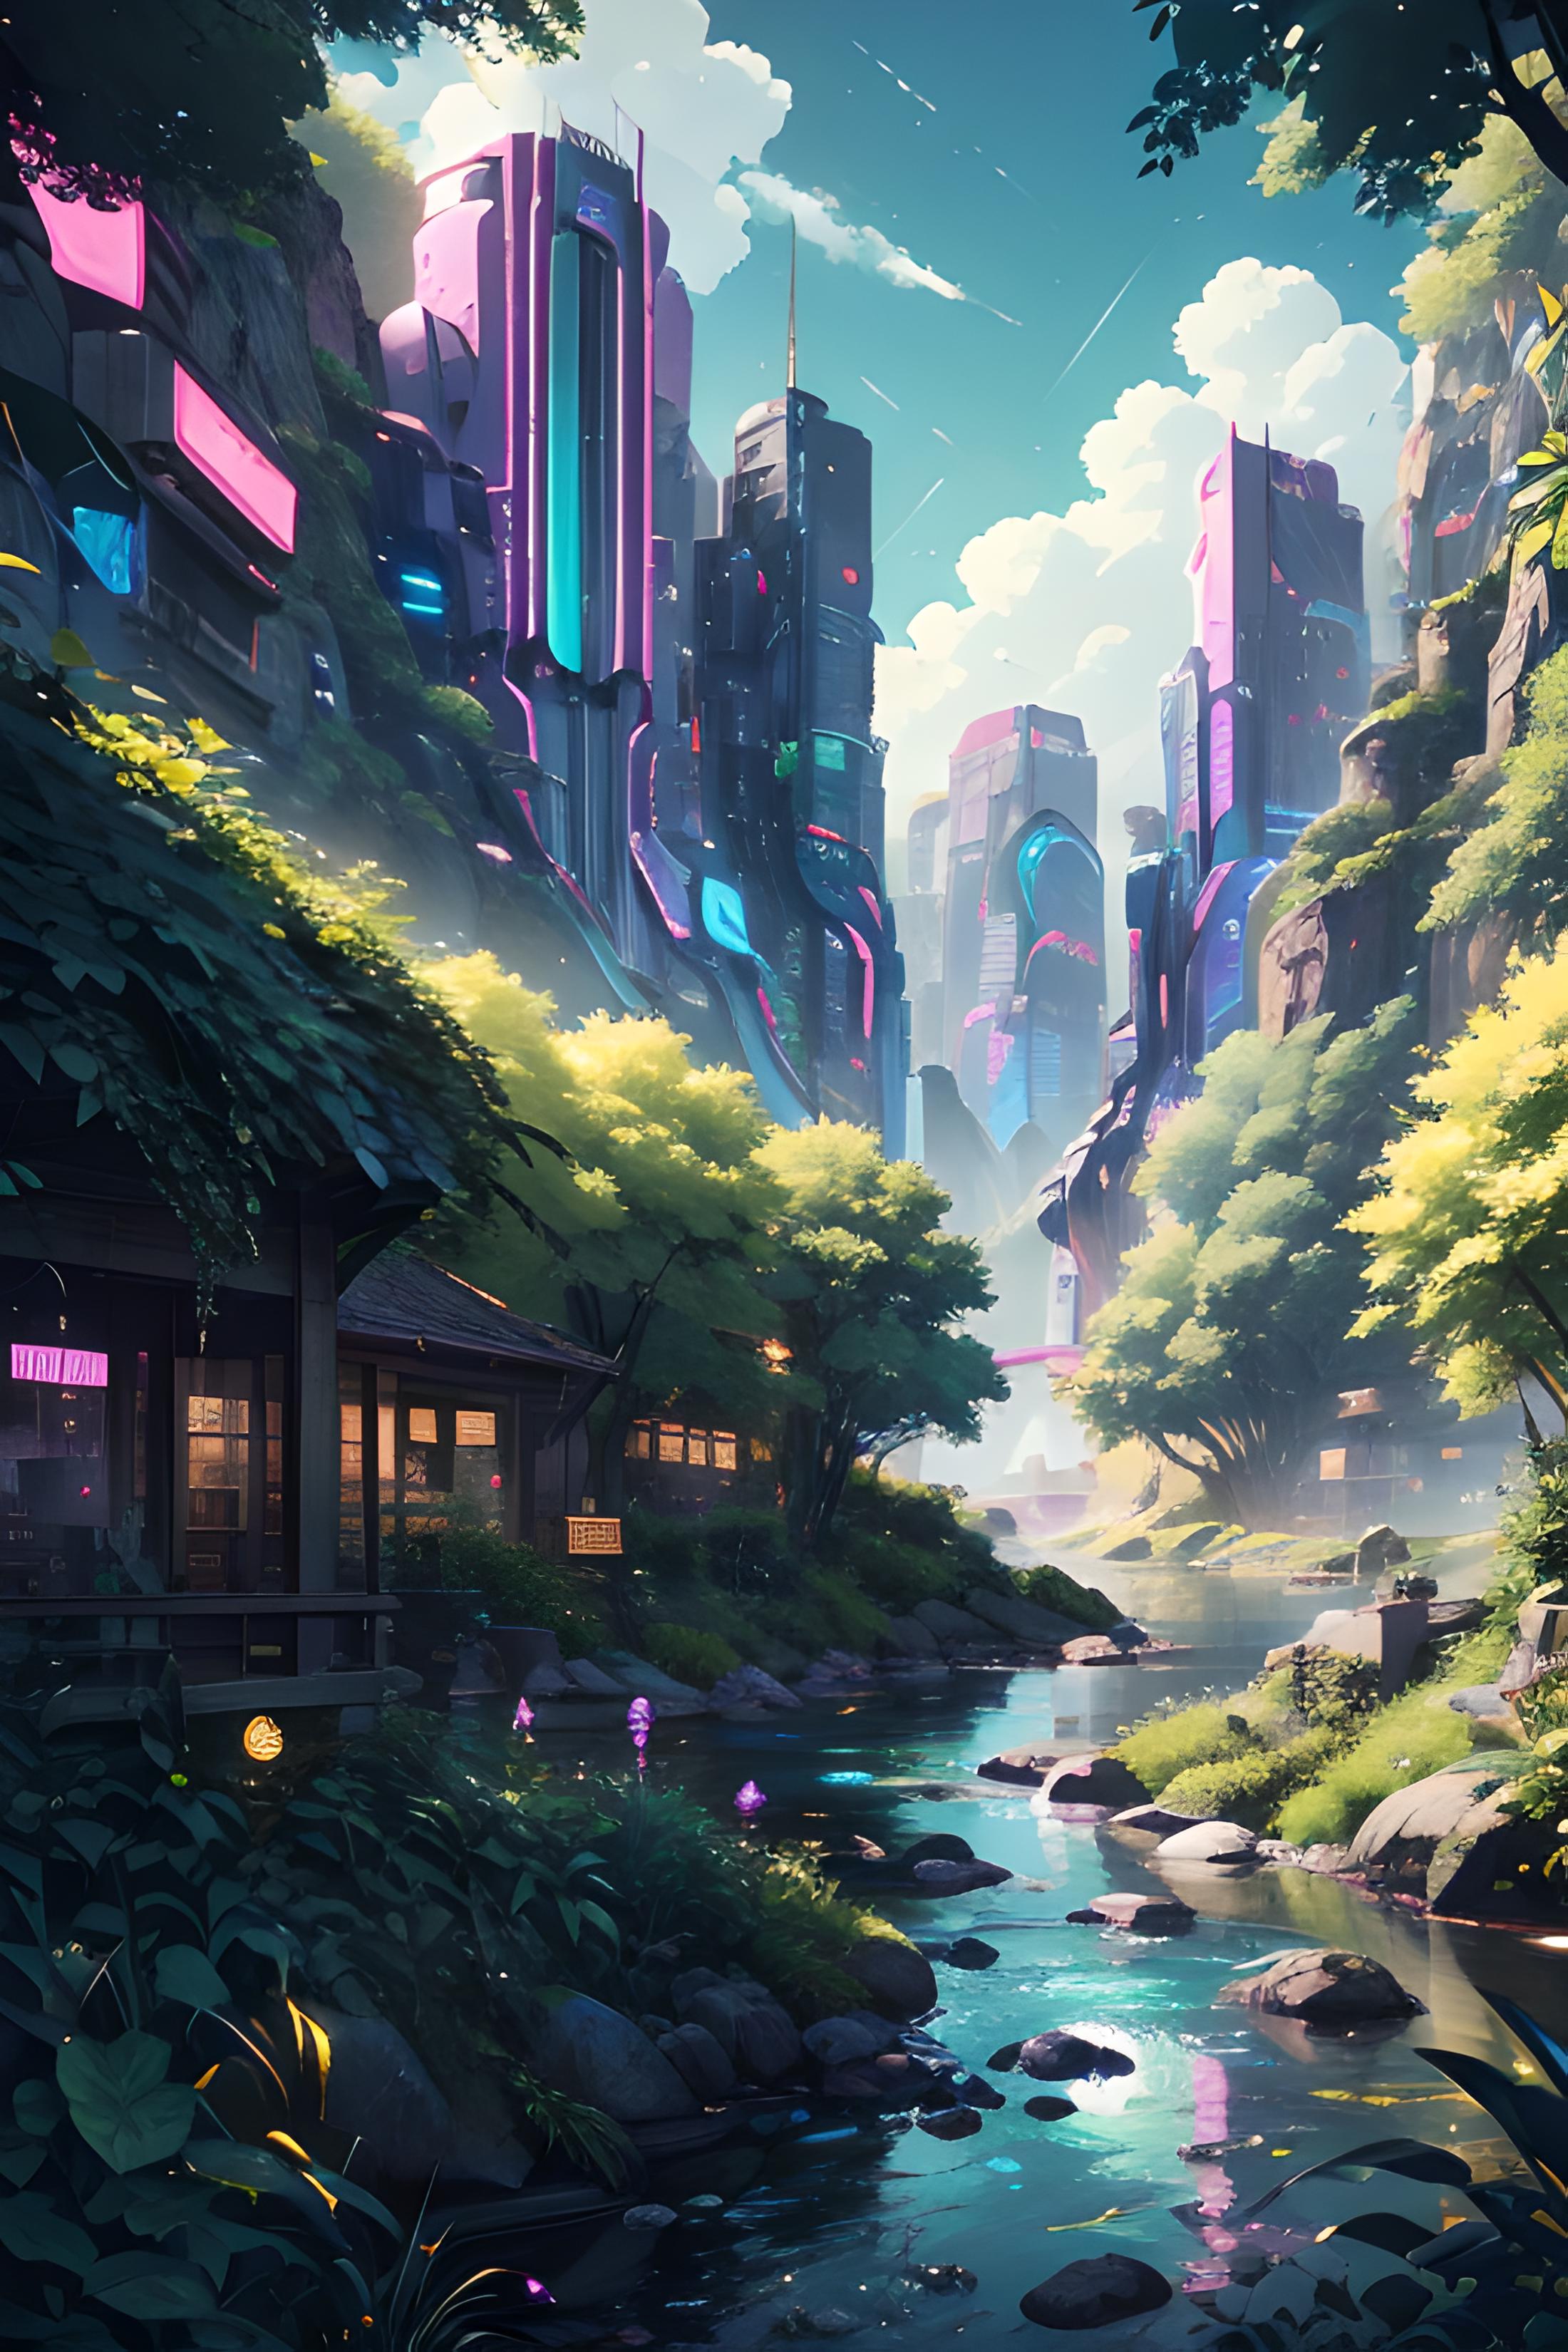 Fantasy style background image by missfidonyo